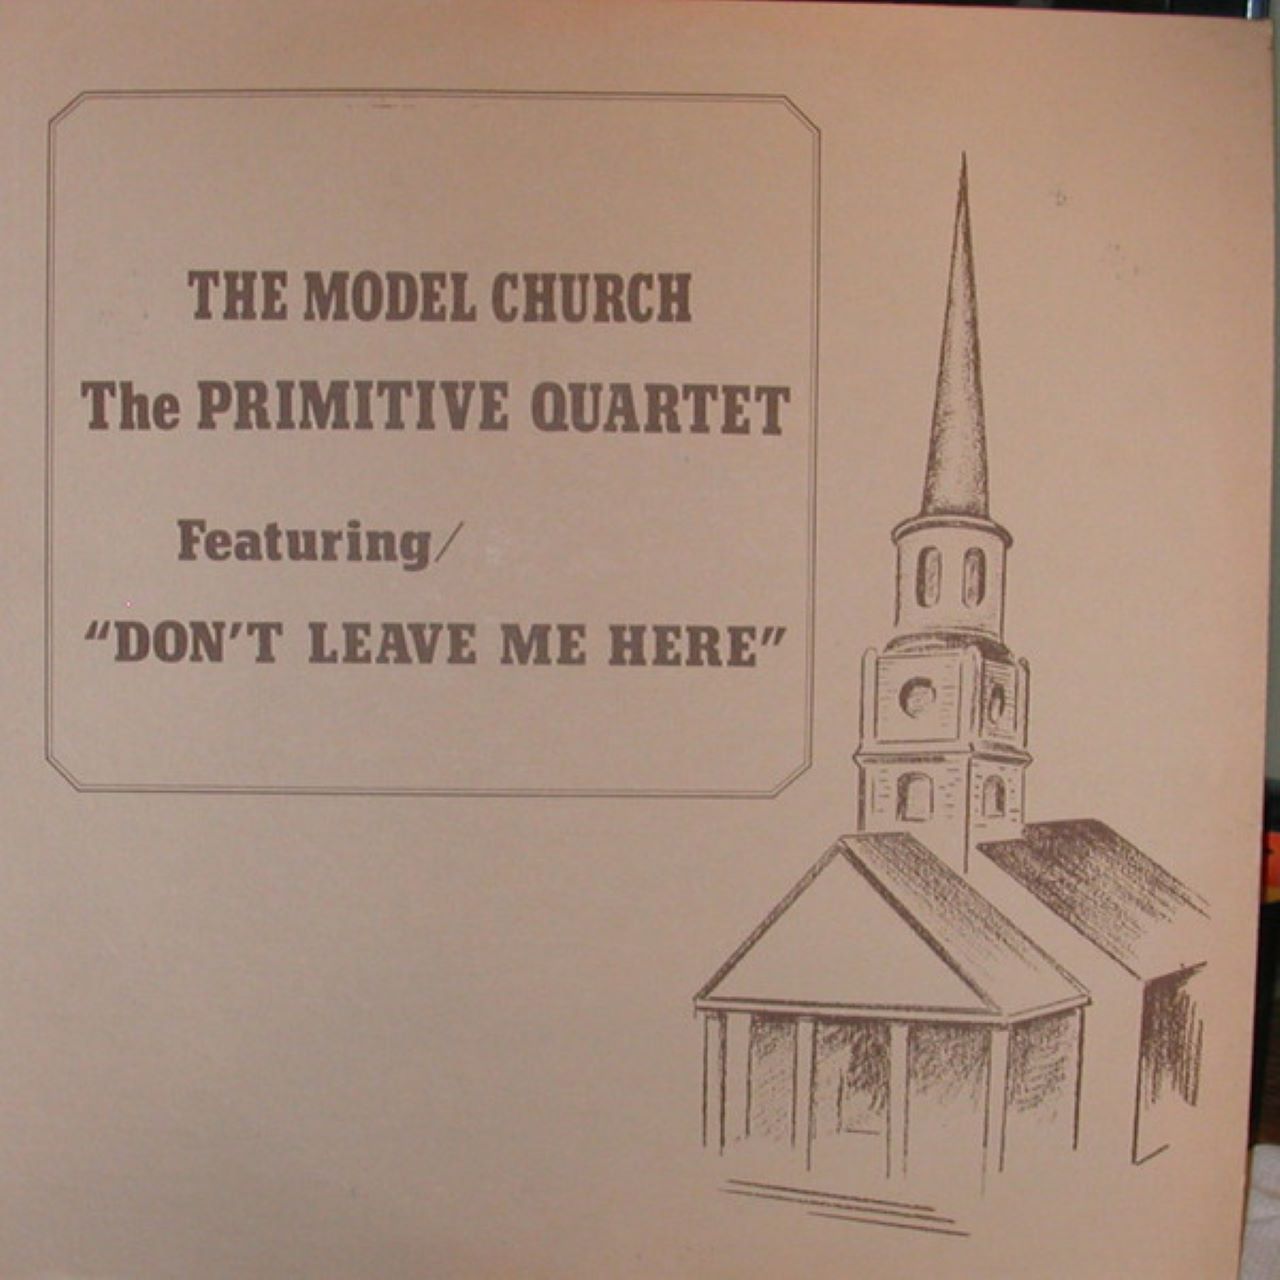 Primitive Quartet - The Model Church cover album